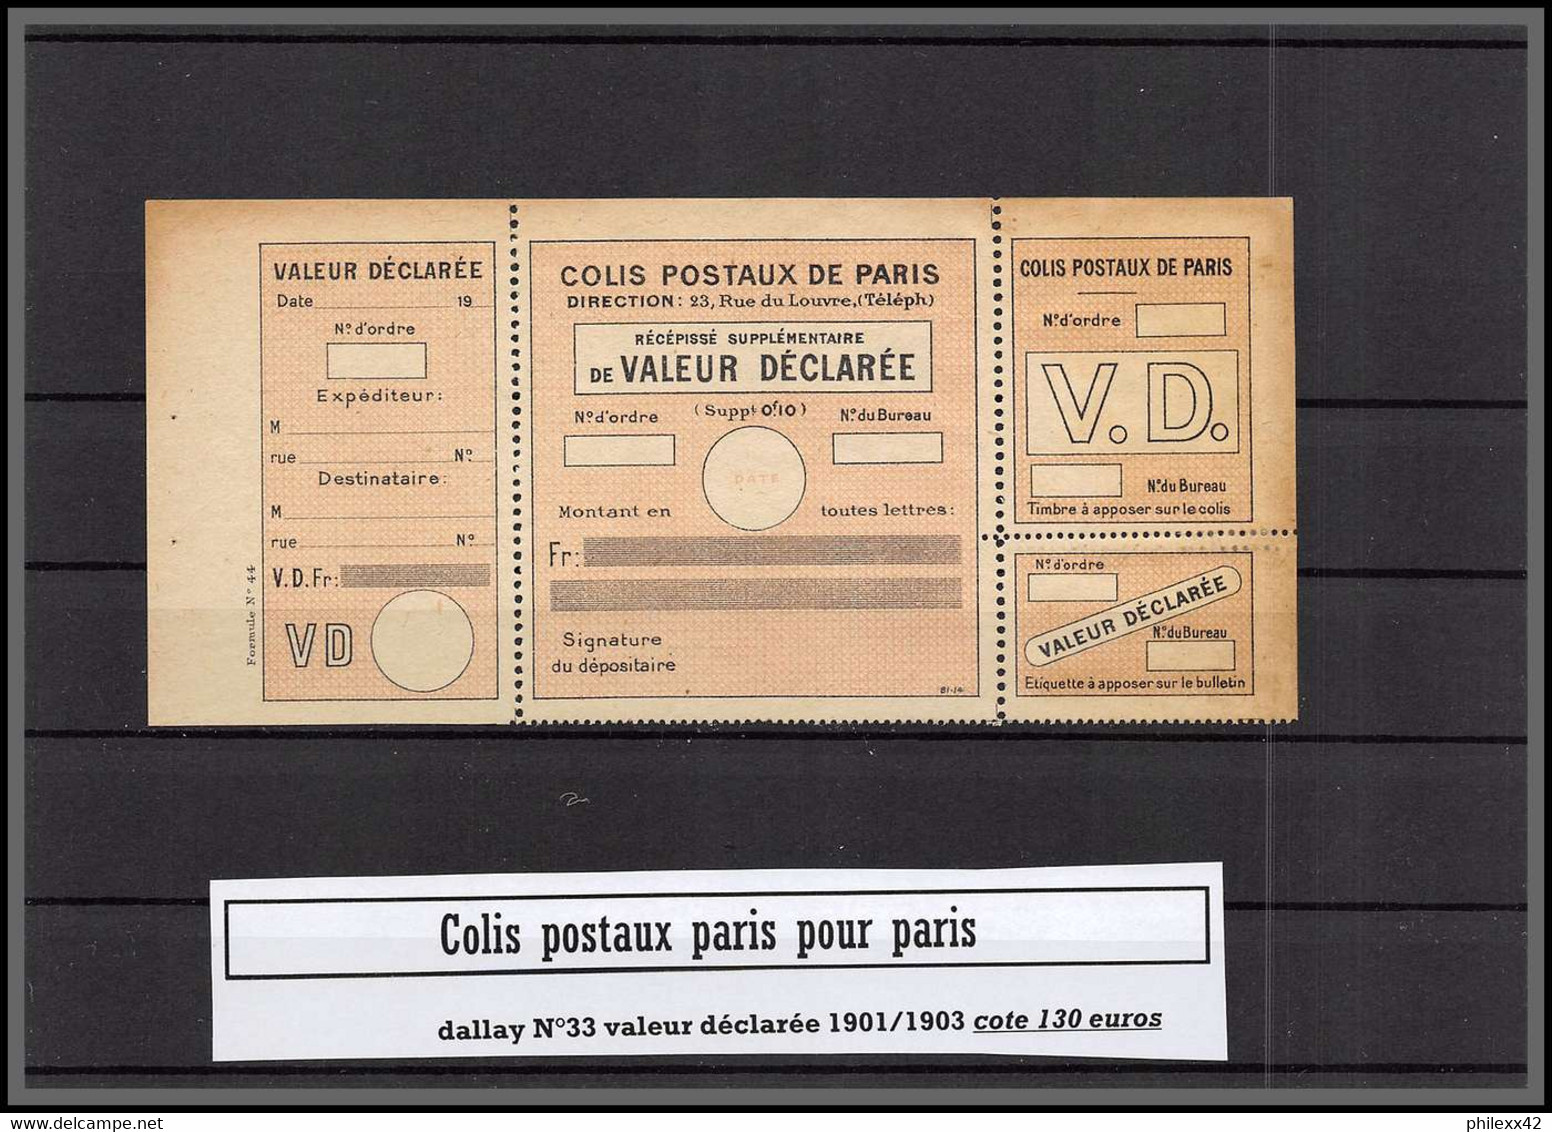 départ 1 euro Collection lot 1c - Colis postaux paris  cote + 700 euros dont bonnes valeurs tous differents 1890/1940